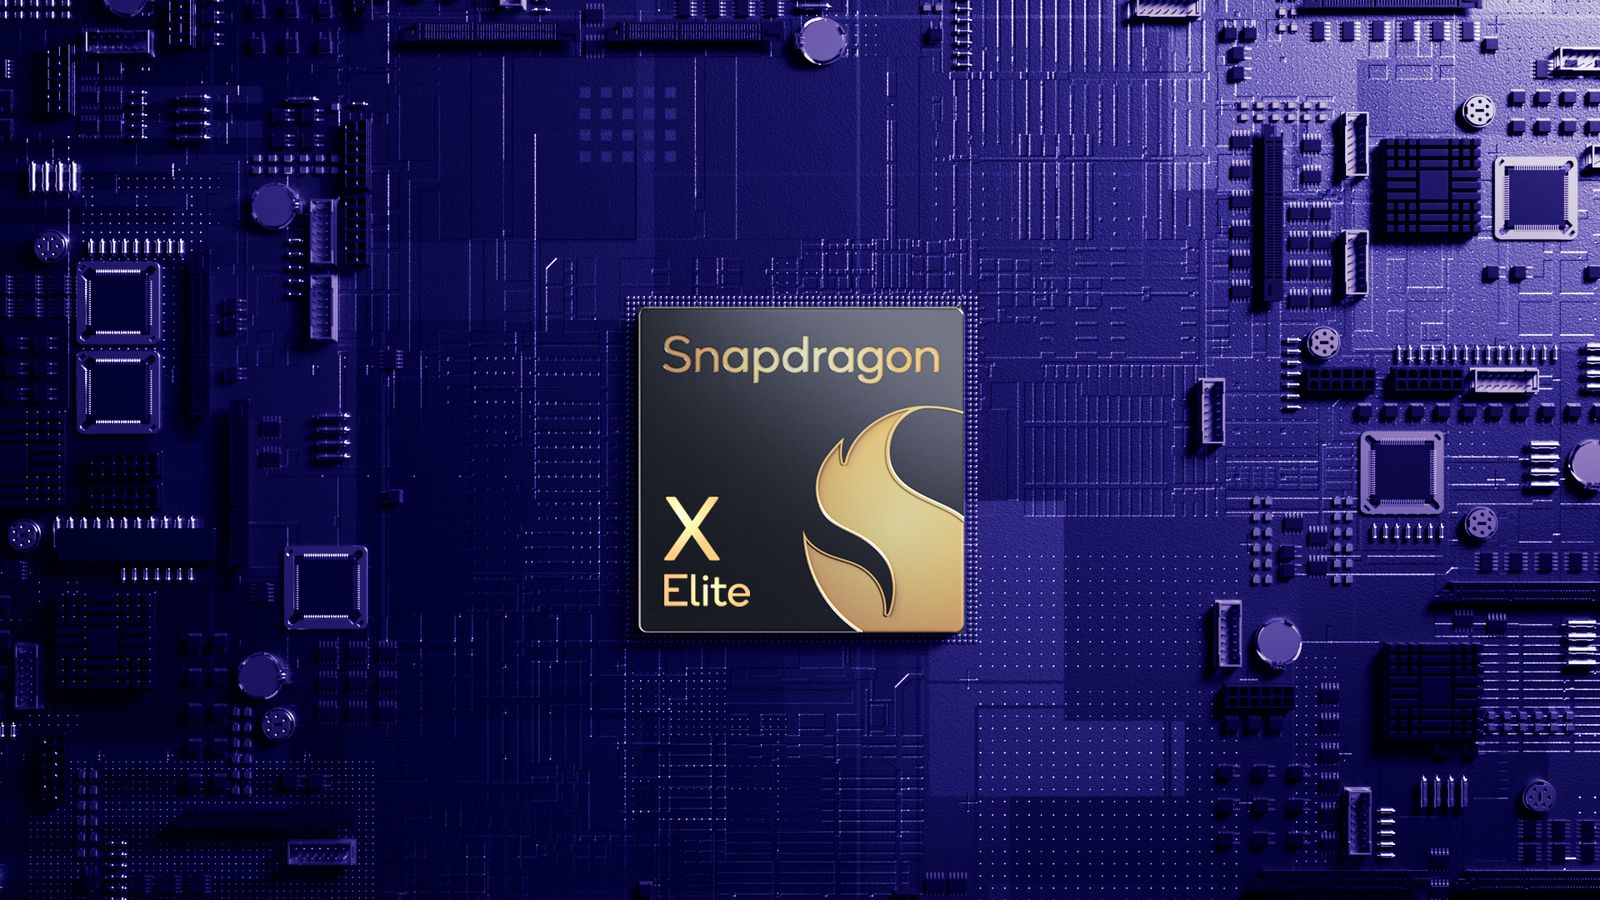 Snapdragon X Elite Hero Image result MMOSITE - Thông tin công nghệ, review, thủ thuật PC, gaming